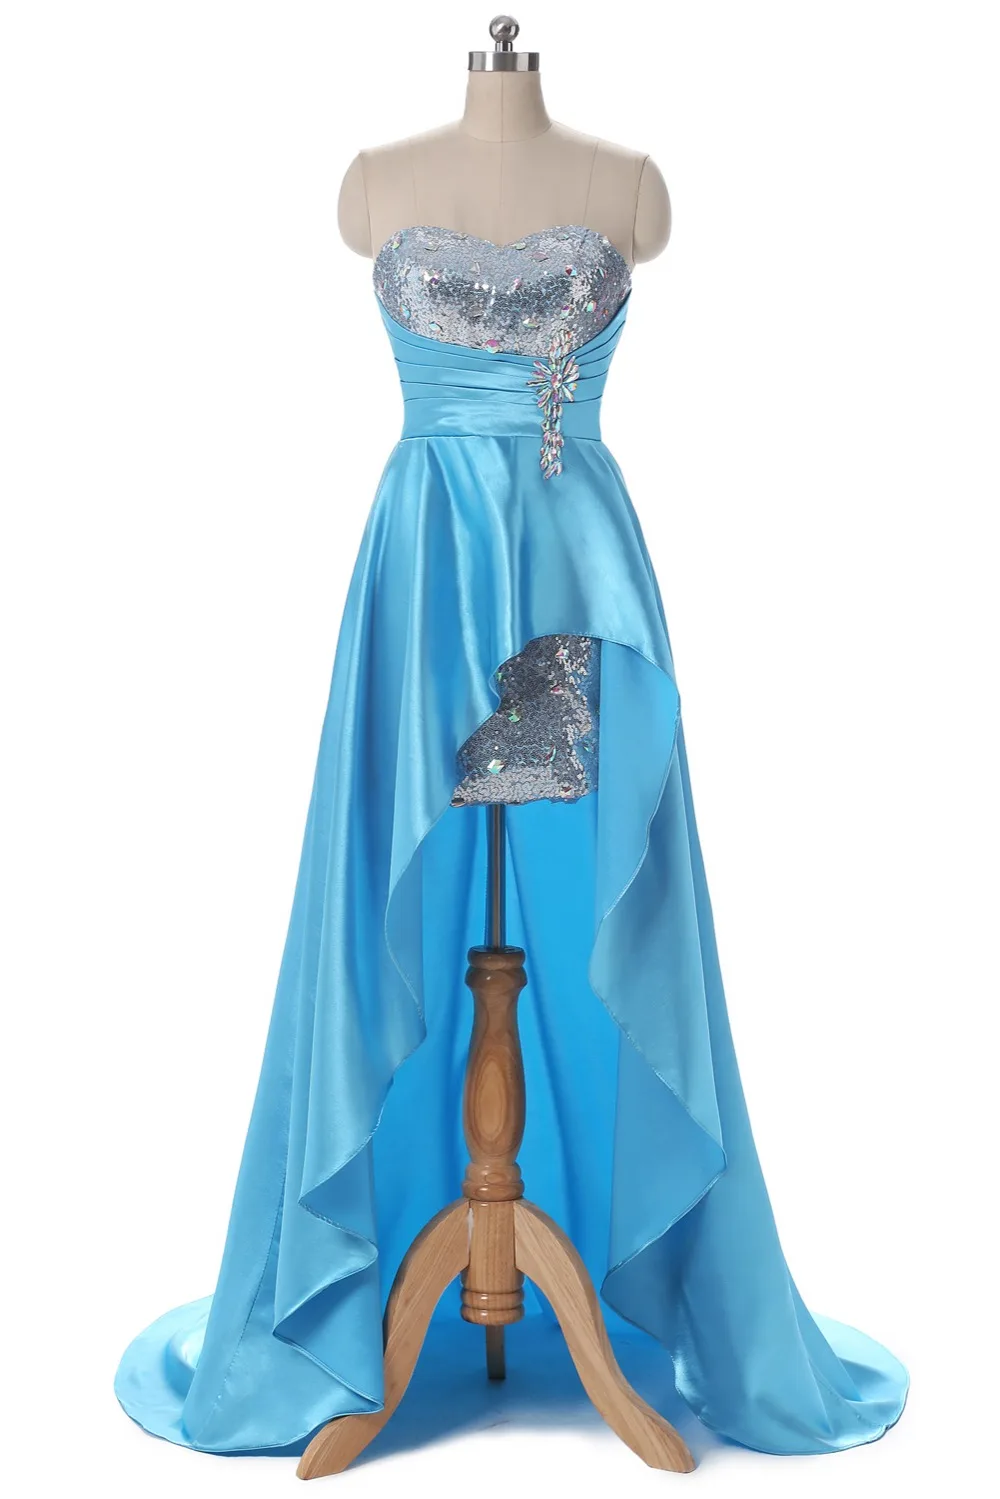 Ruthshen асимметричное платье для выпускного вечера с Блестками, Бисером, вечернее платье для вечеринки, высокая низкая настоящая фотография, платье для особых случаев